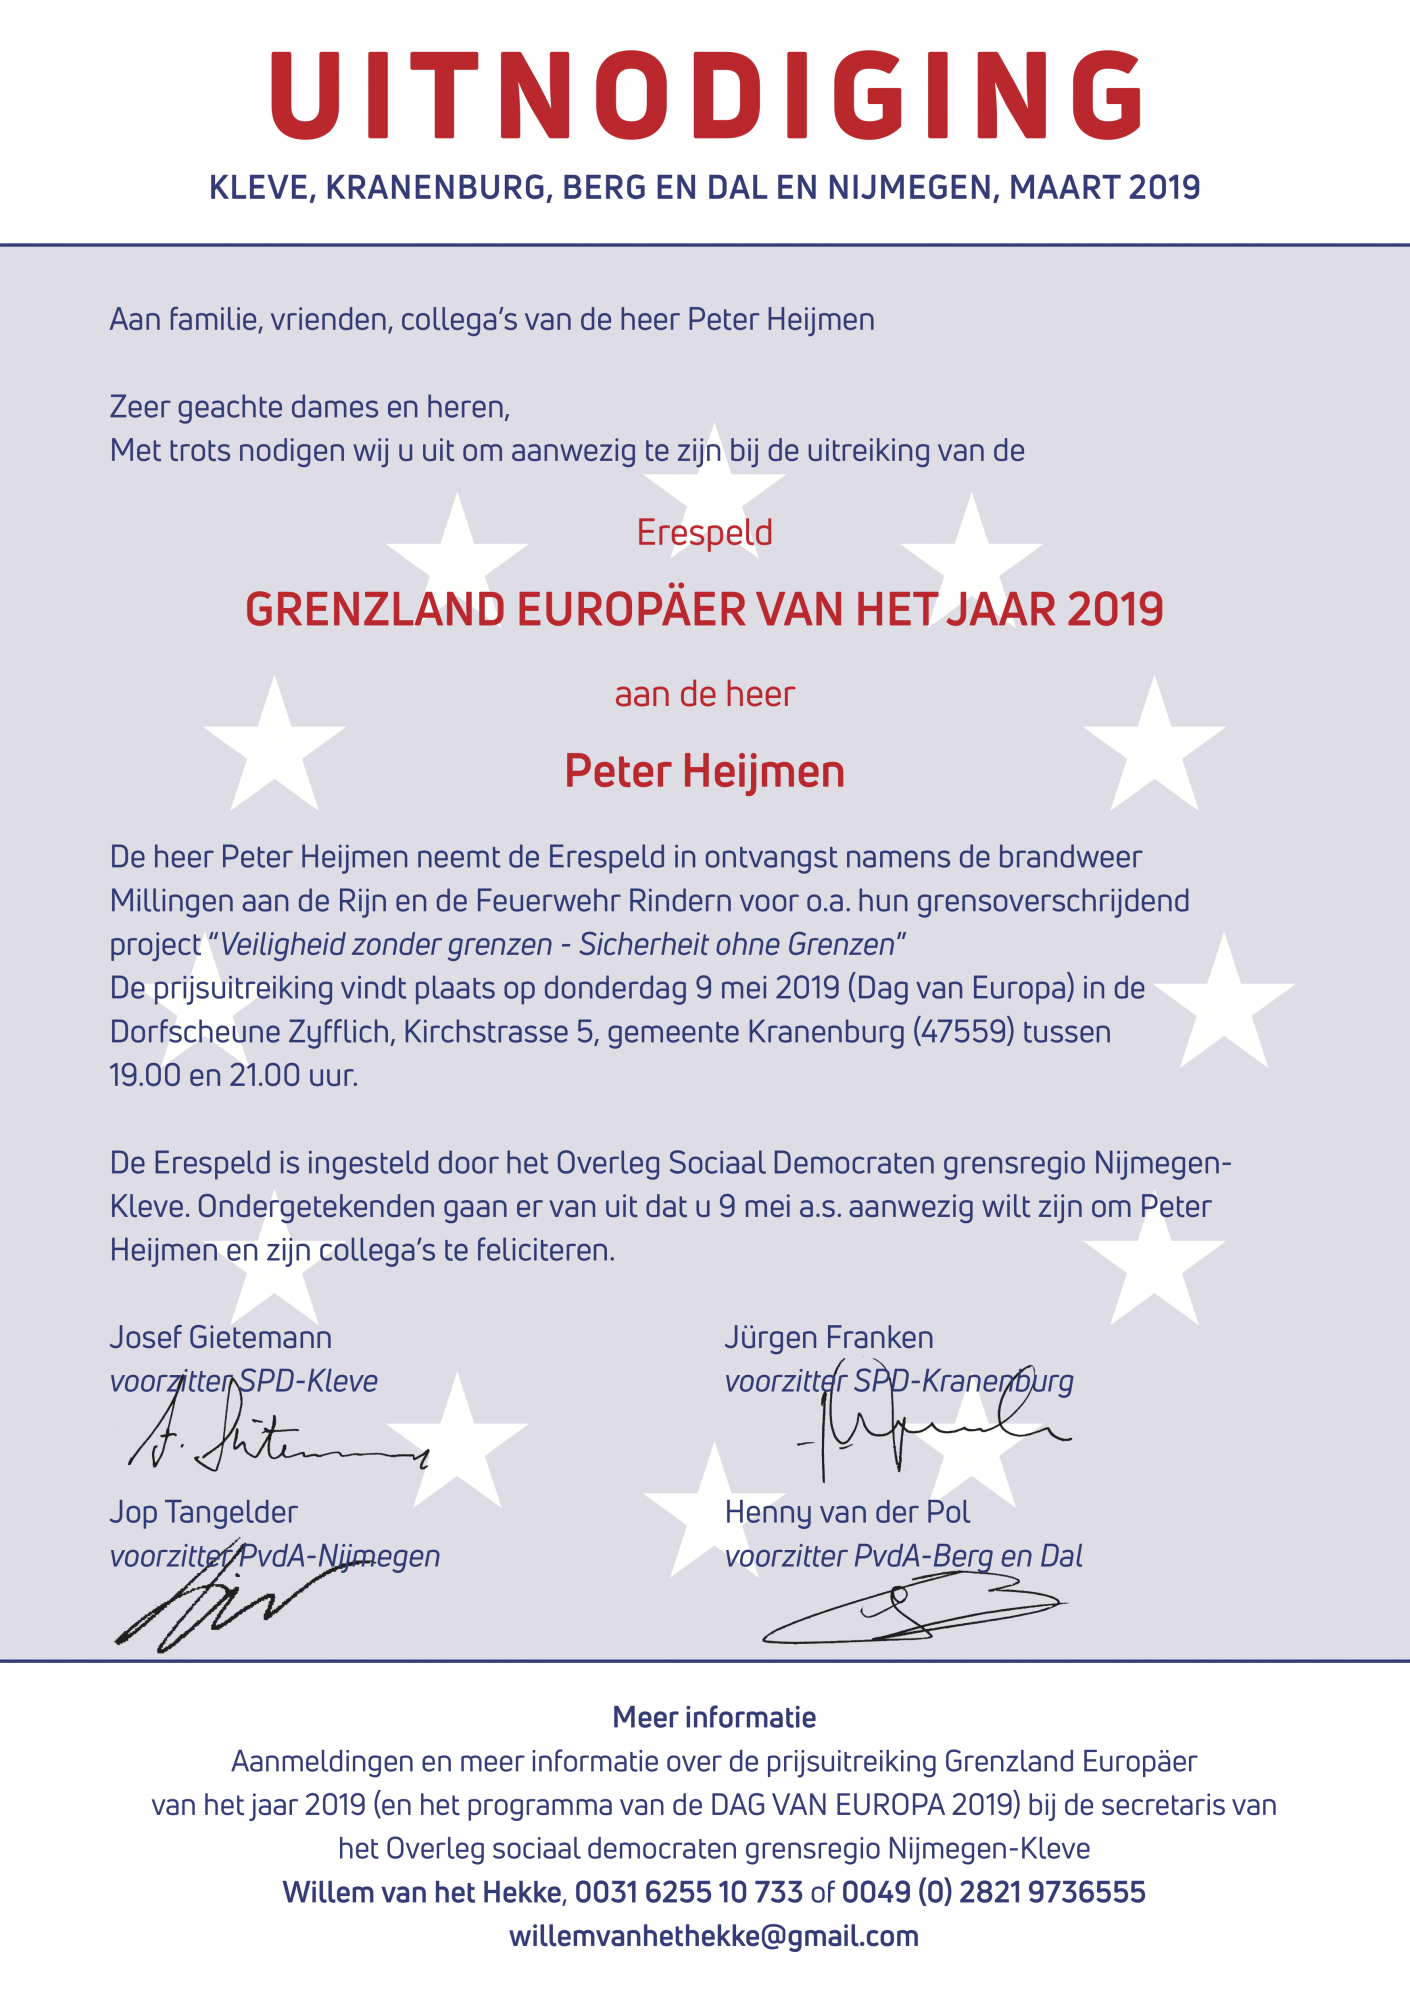 https://bergendal.pvda.nl/nieuws/uitnodiging-dag-van-europa-9-mei-2019/